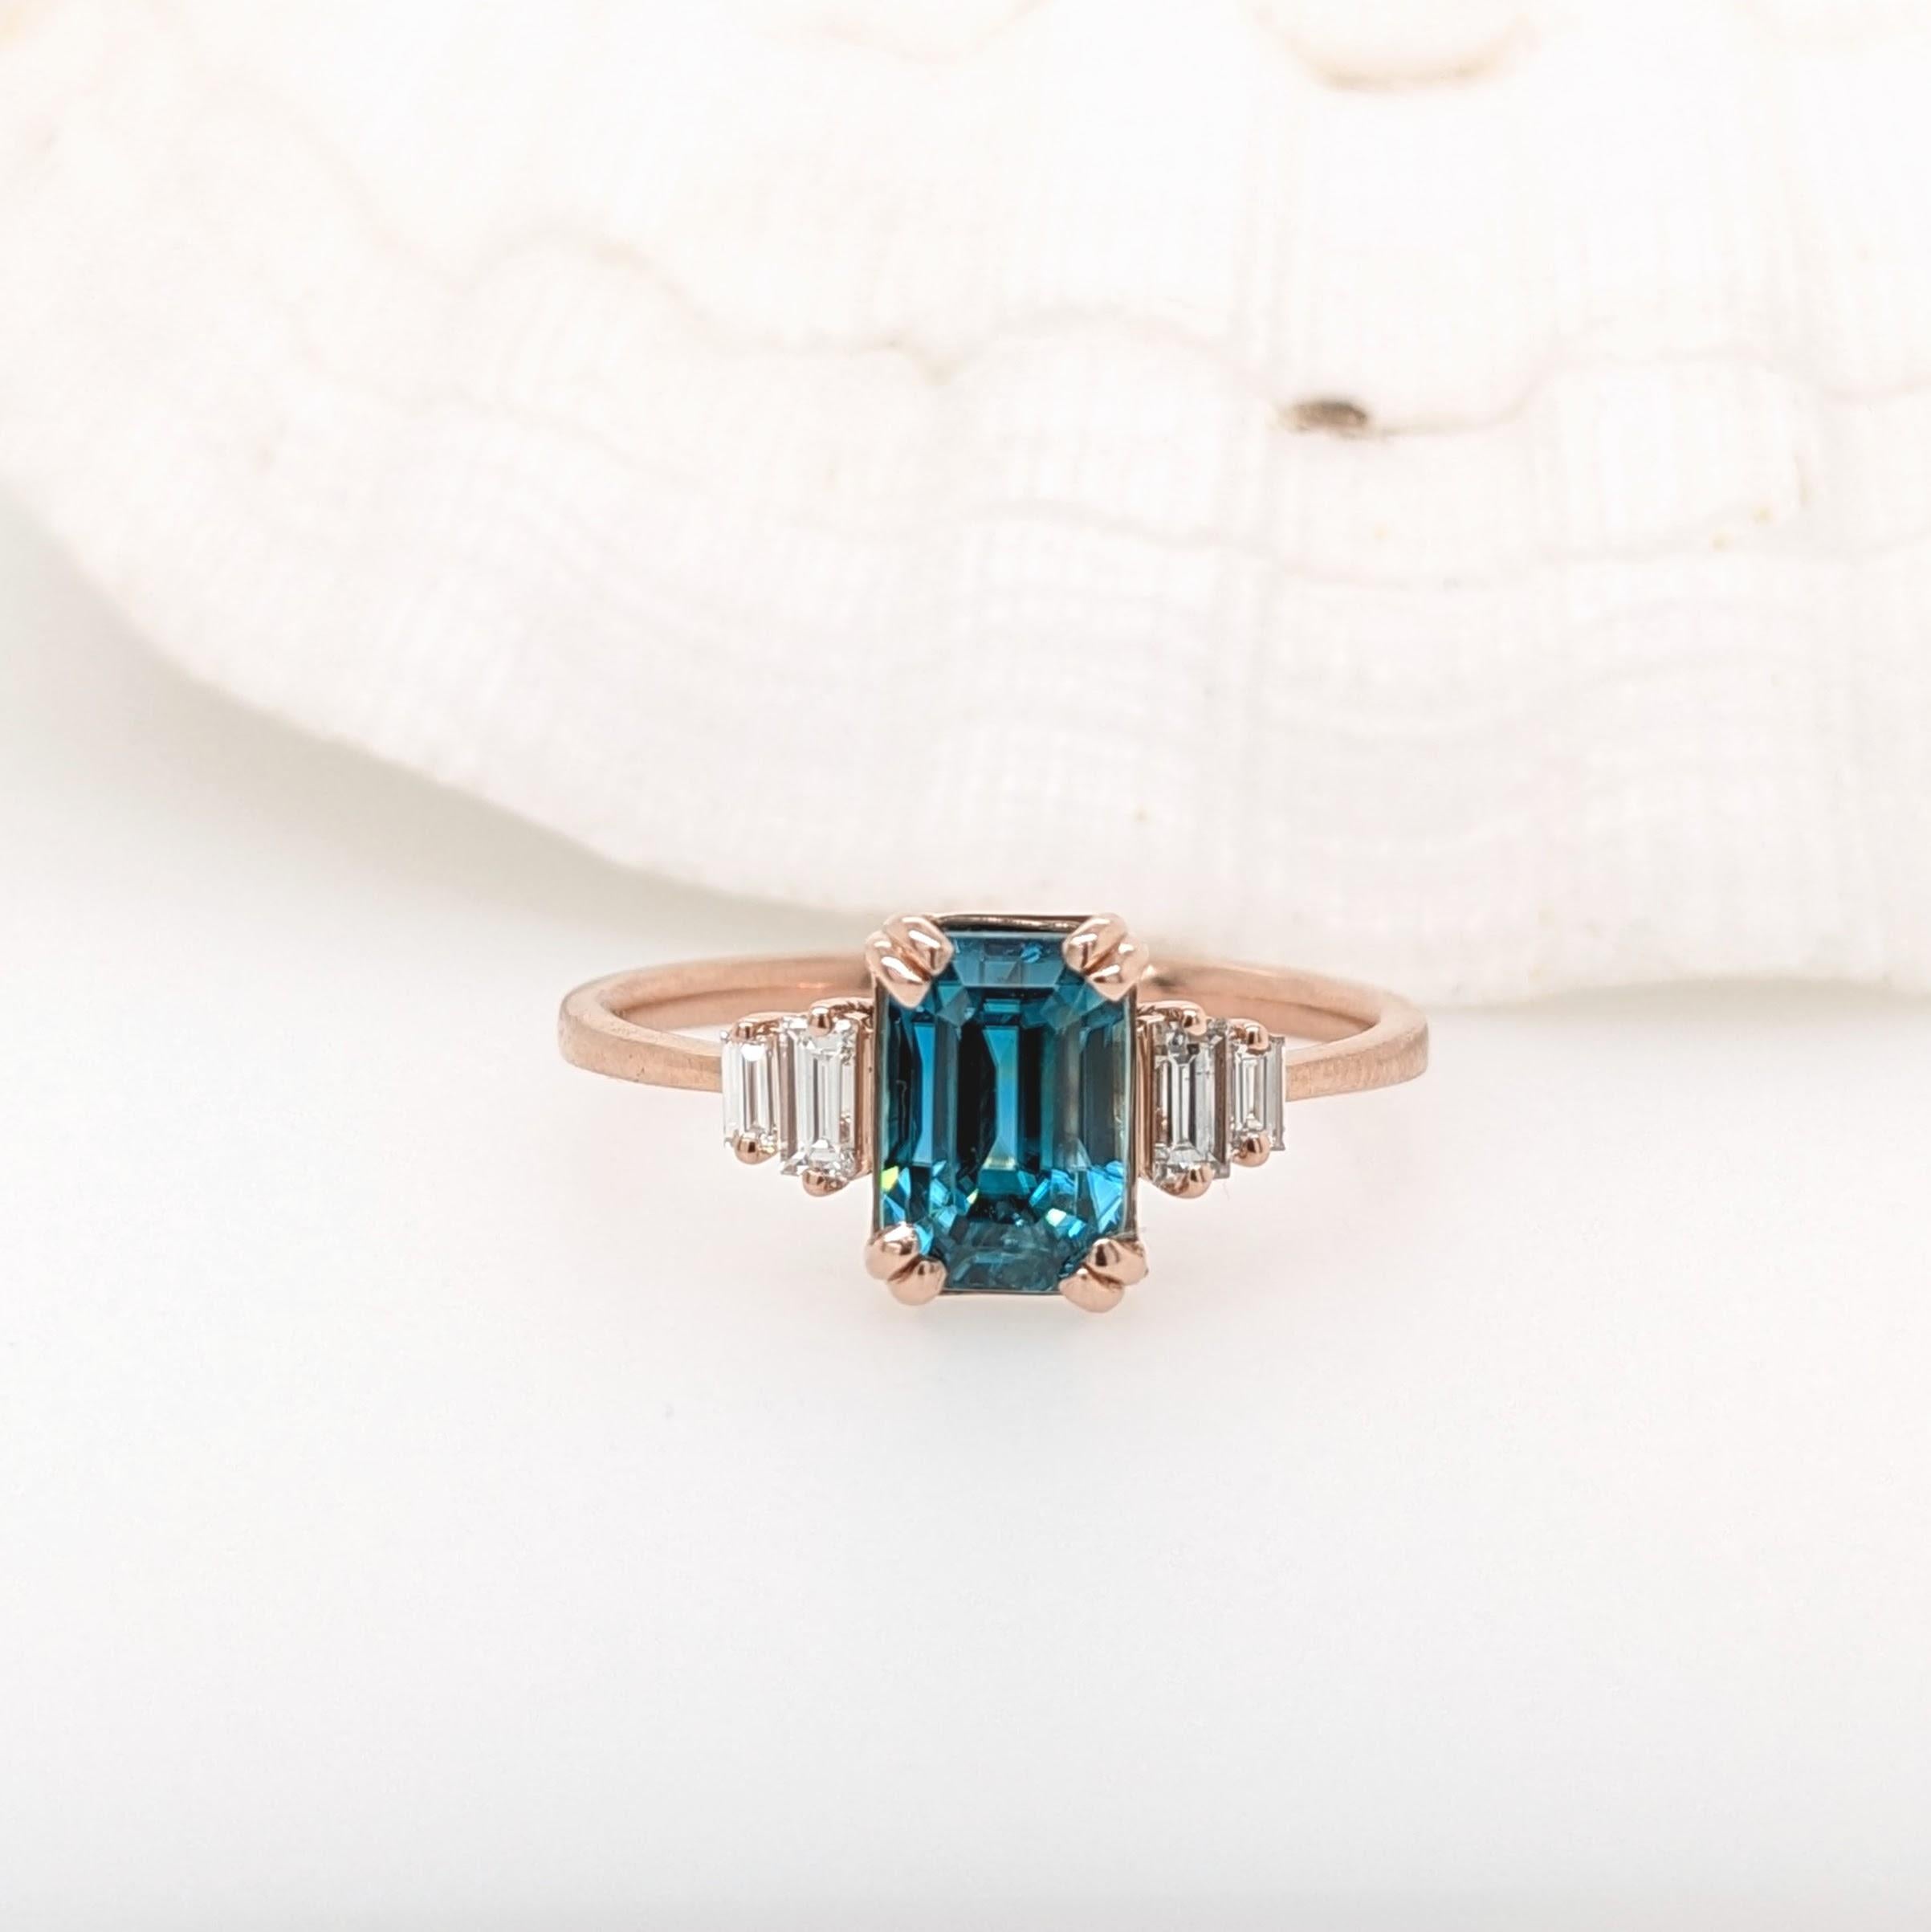 Cette bague est ornée d'un magnifique zircon bleu naturel en or rose massif 14 carats et de magnifiques diamants baguettes qui lui confèrent une allure moderne et élégante. Les zircons sont réputés pour leur indice de réfraction qui se rapproche le